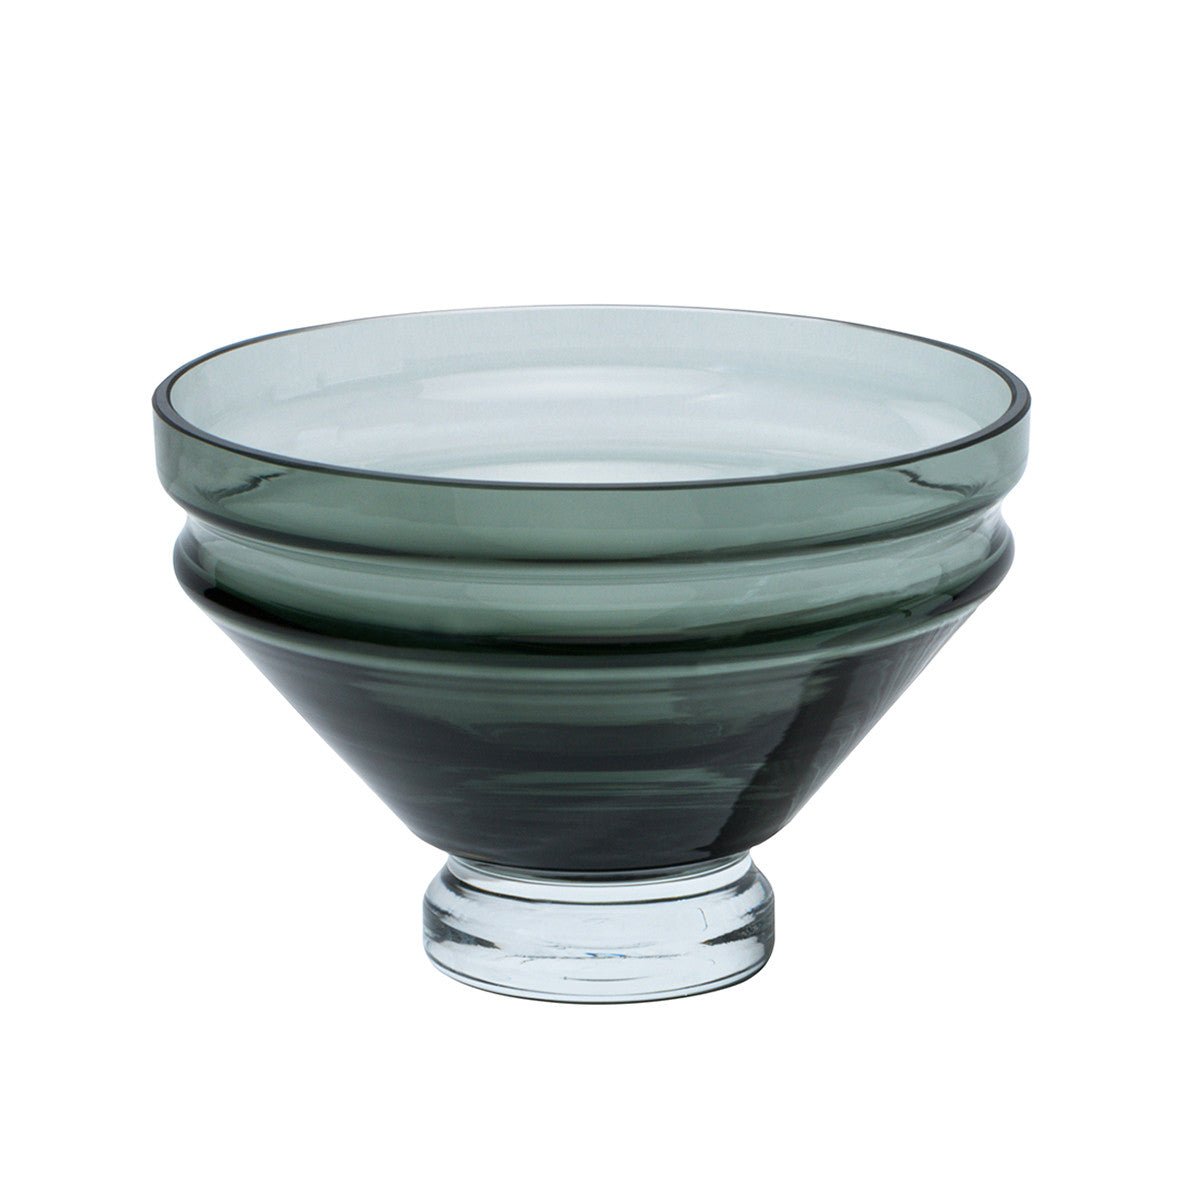 Relæ Glass Bowl Large, (Various Colours)